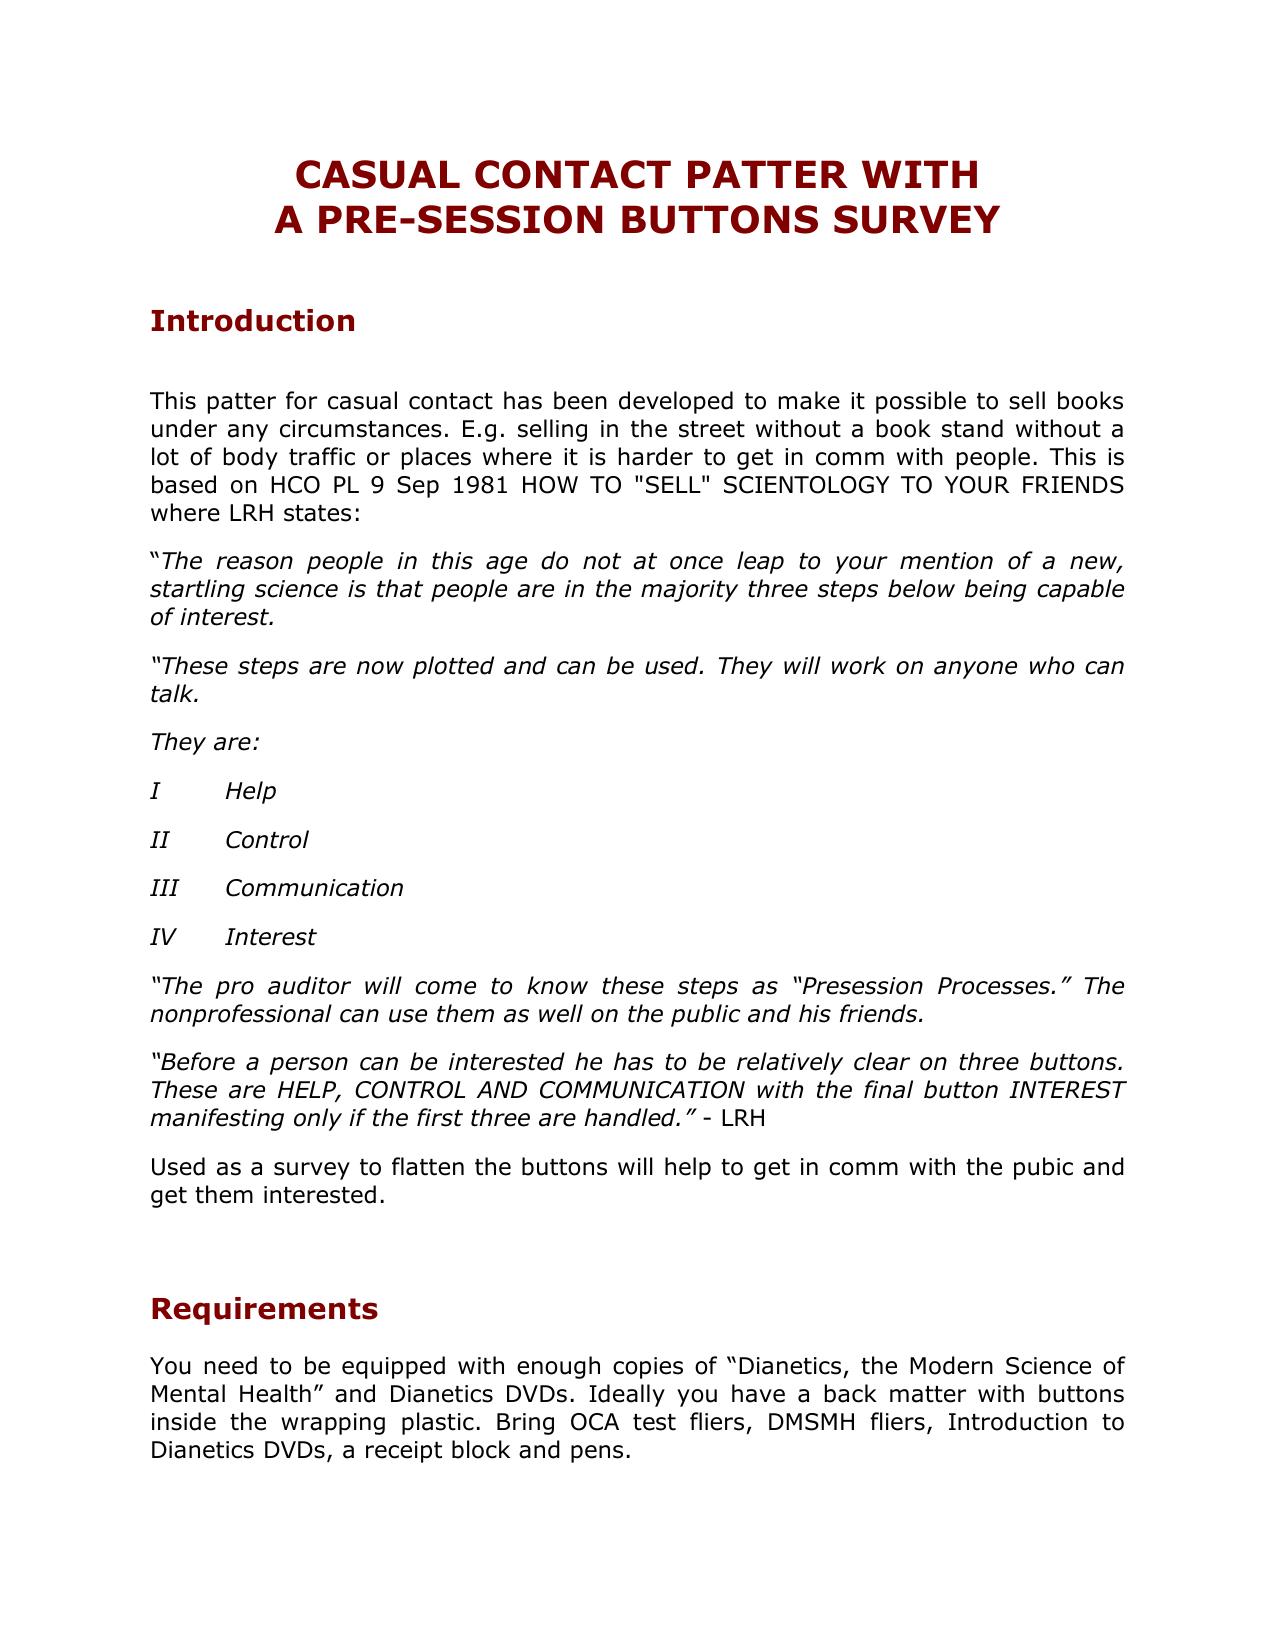 Pre-Session Survey Patter001